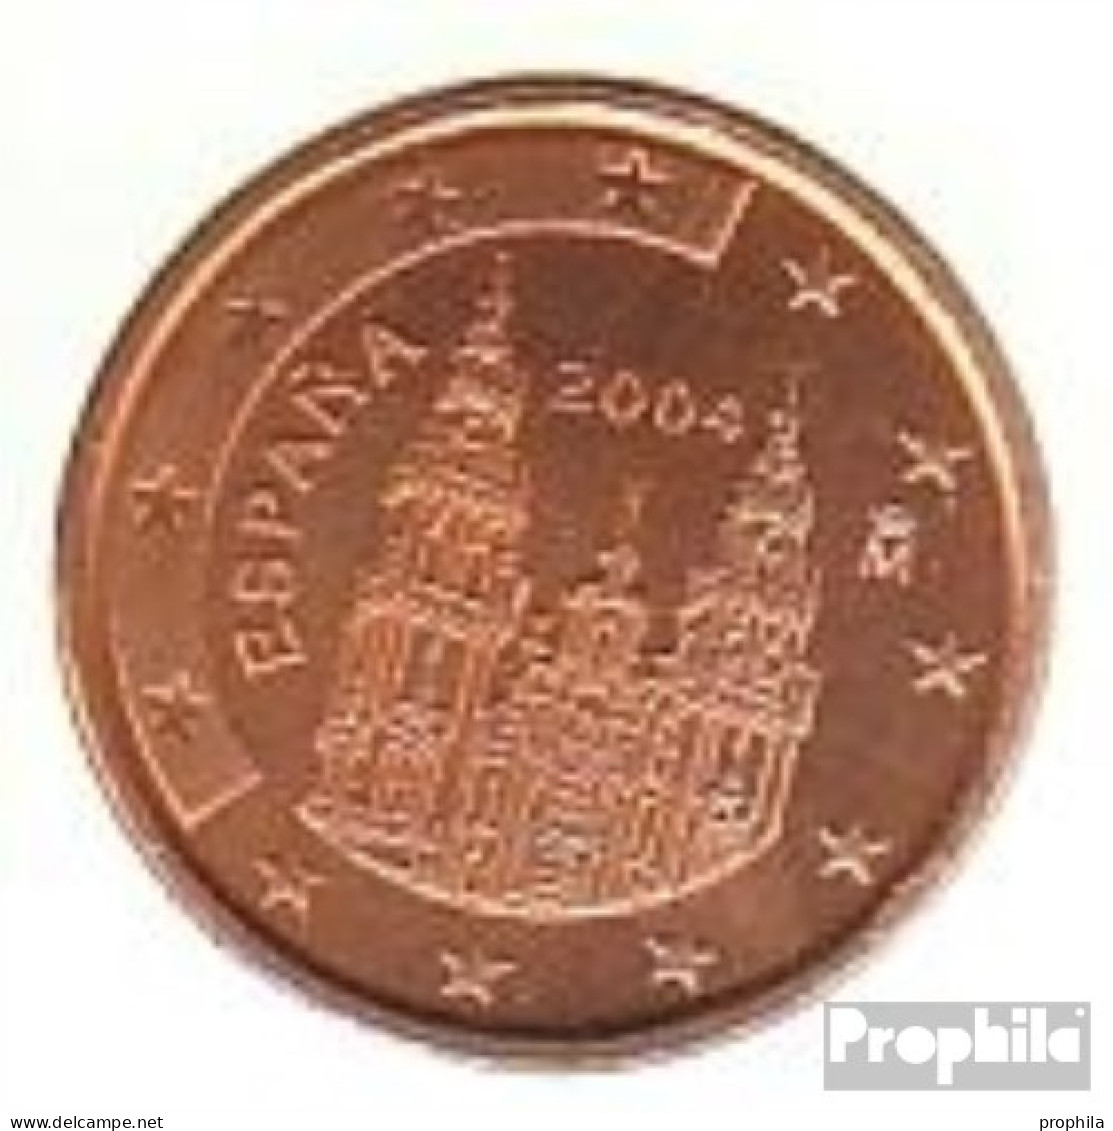 Spanien E 1 2004 Stgl./unzirkuliert Stgl./unzirkuliert 2004 Kursmünze 1 Cent - Spain